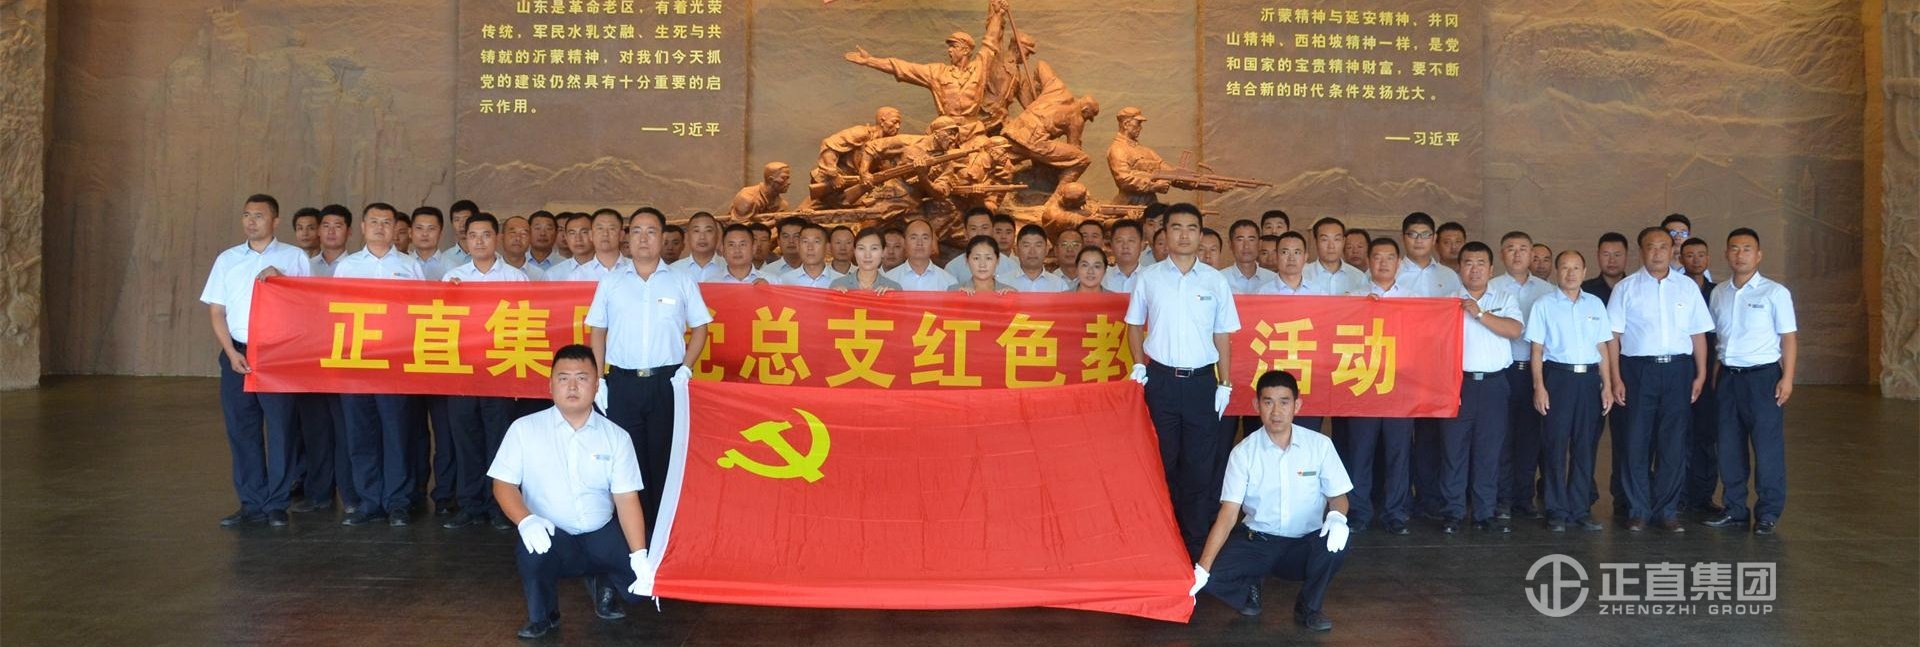 豪利777全体党员赴沂蒙革命纪念馆庆祝中国共产党建立96周年